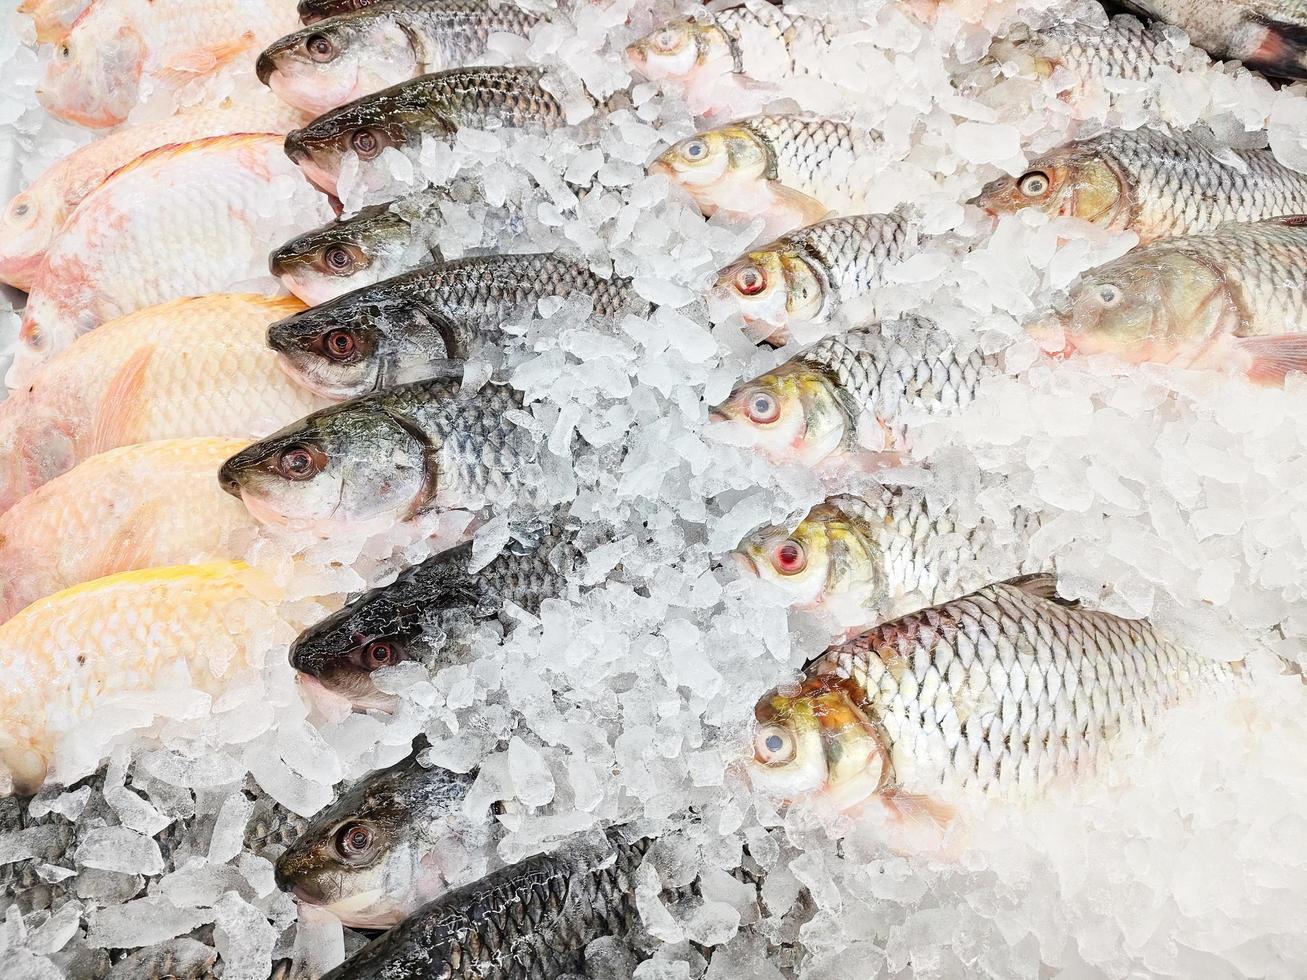 Pescado de púas de plata fresco a la venta en el restaurante de mariscos del mercado, pescado de carpa crudo sobre hielo foto